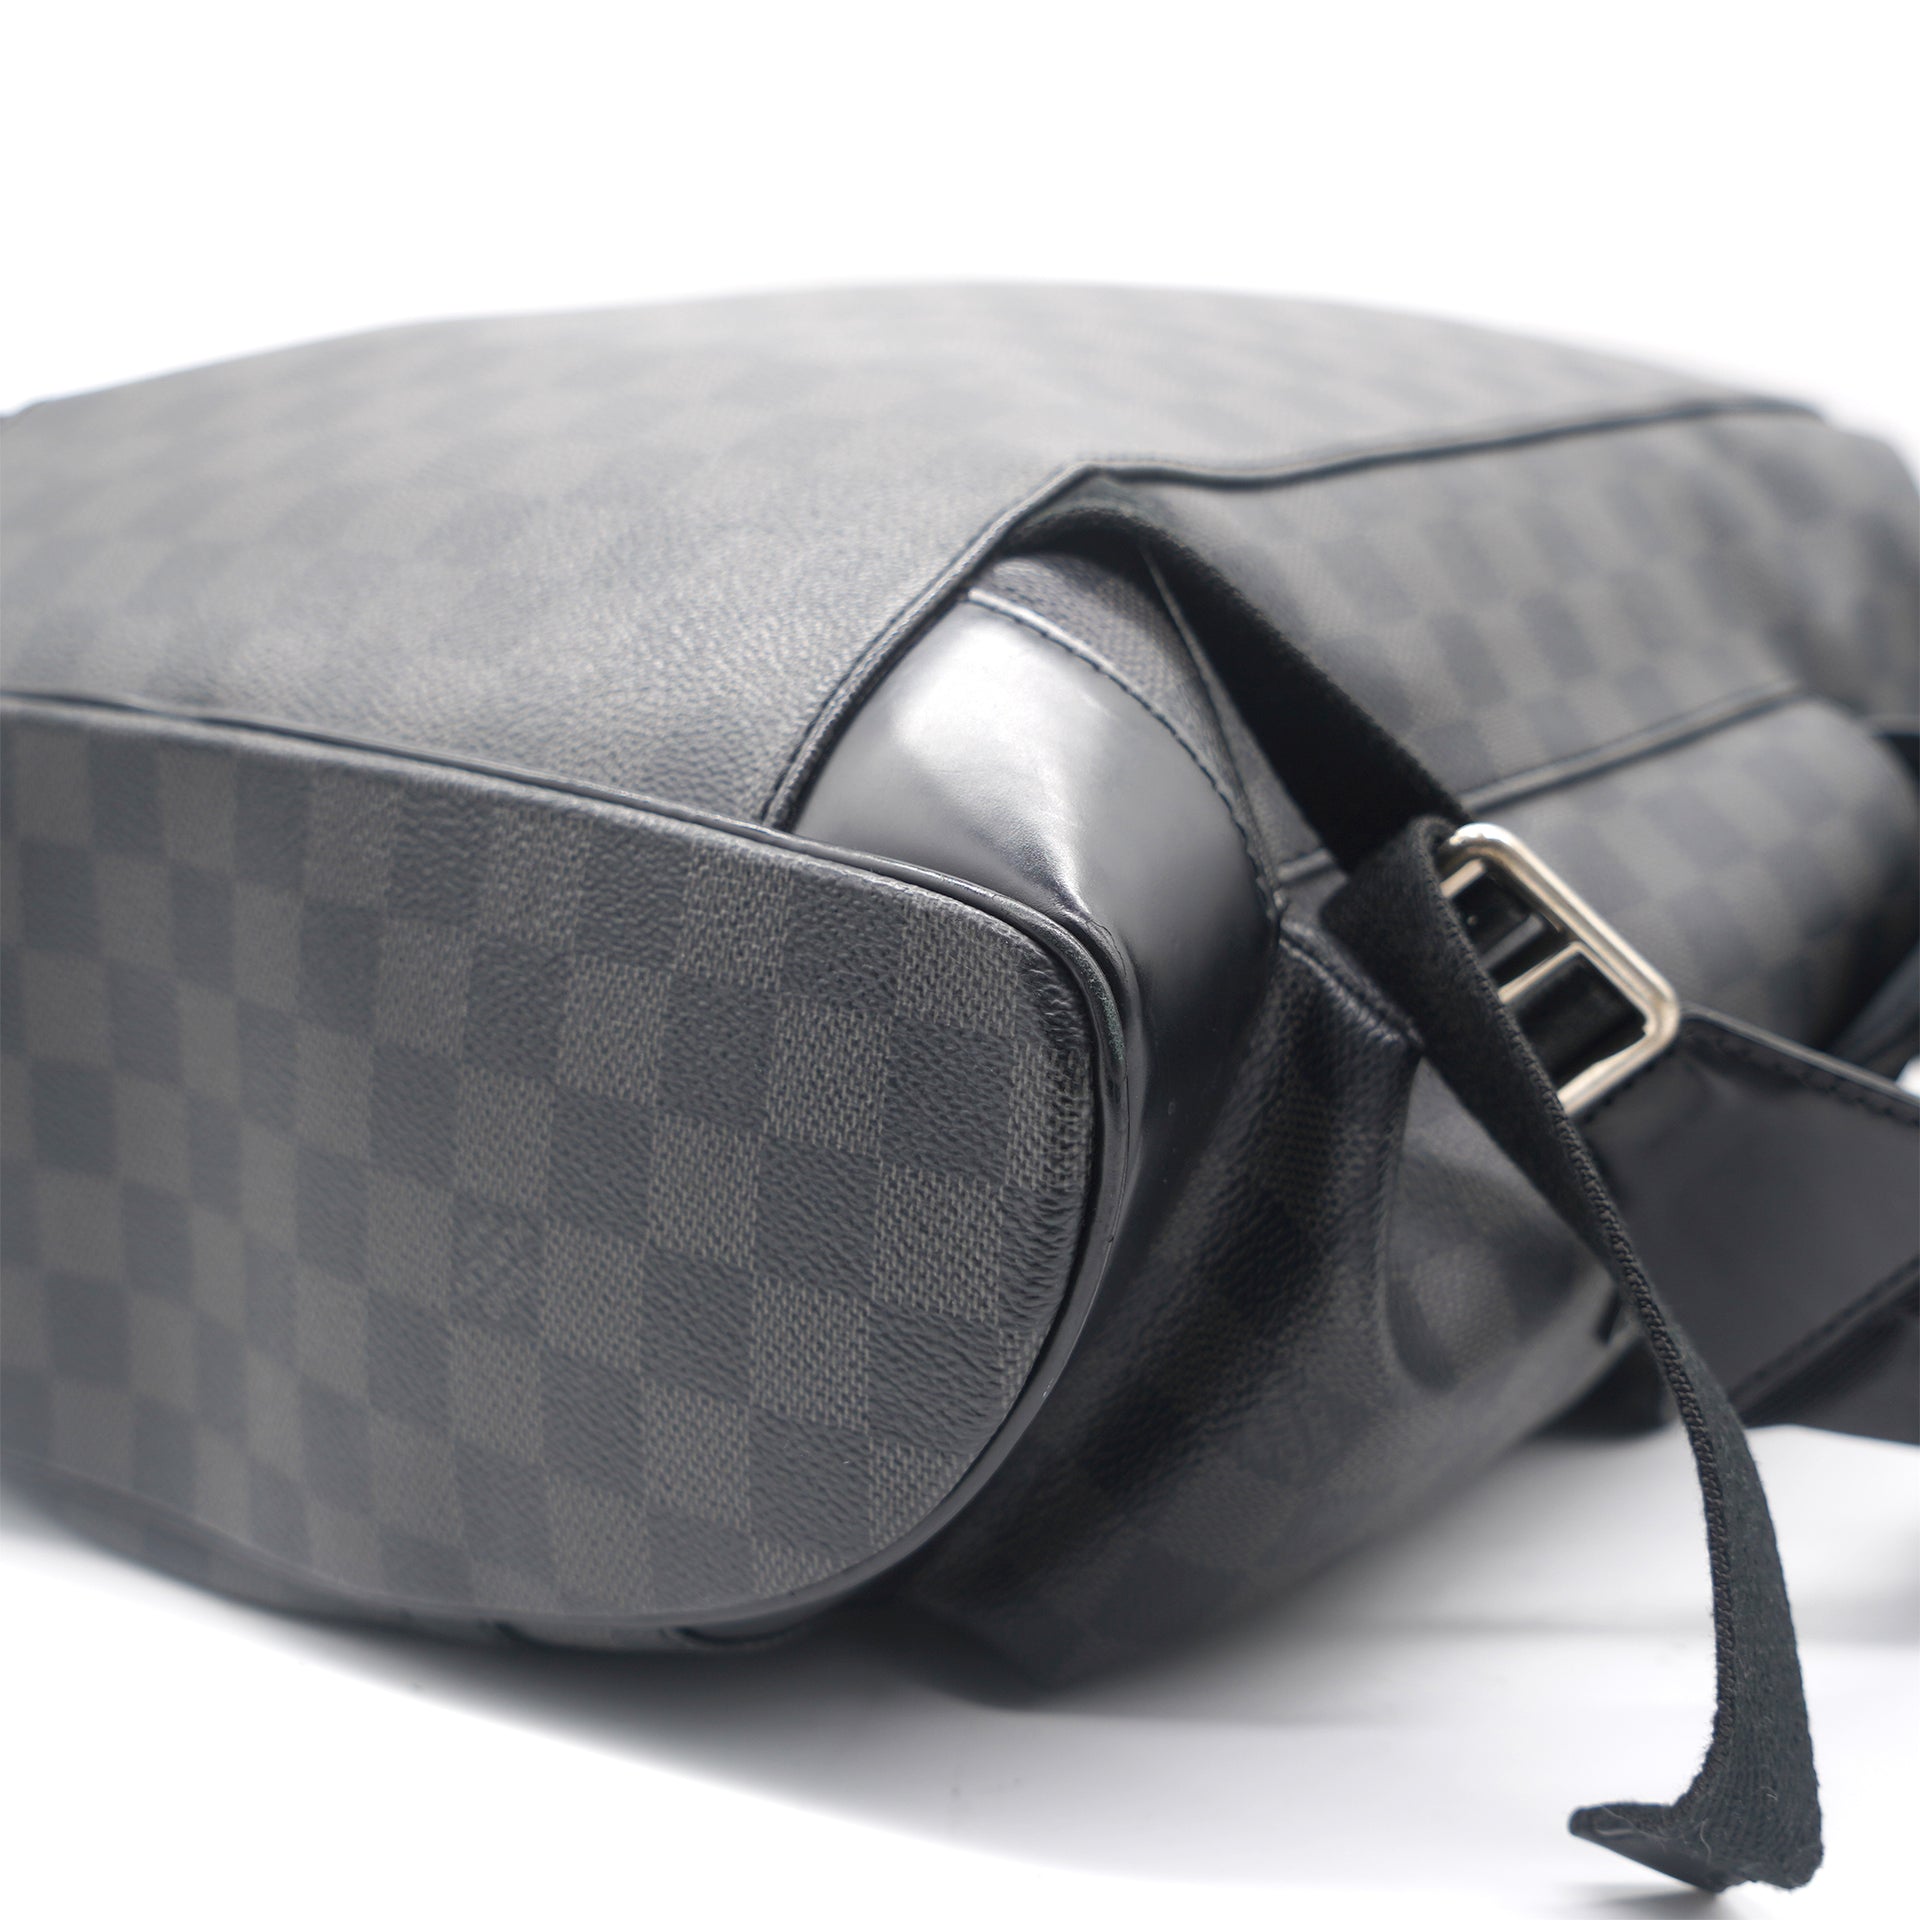 Louis Vuitton Damier Graphite Canvas Chris PM Backpack Bag